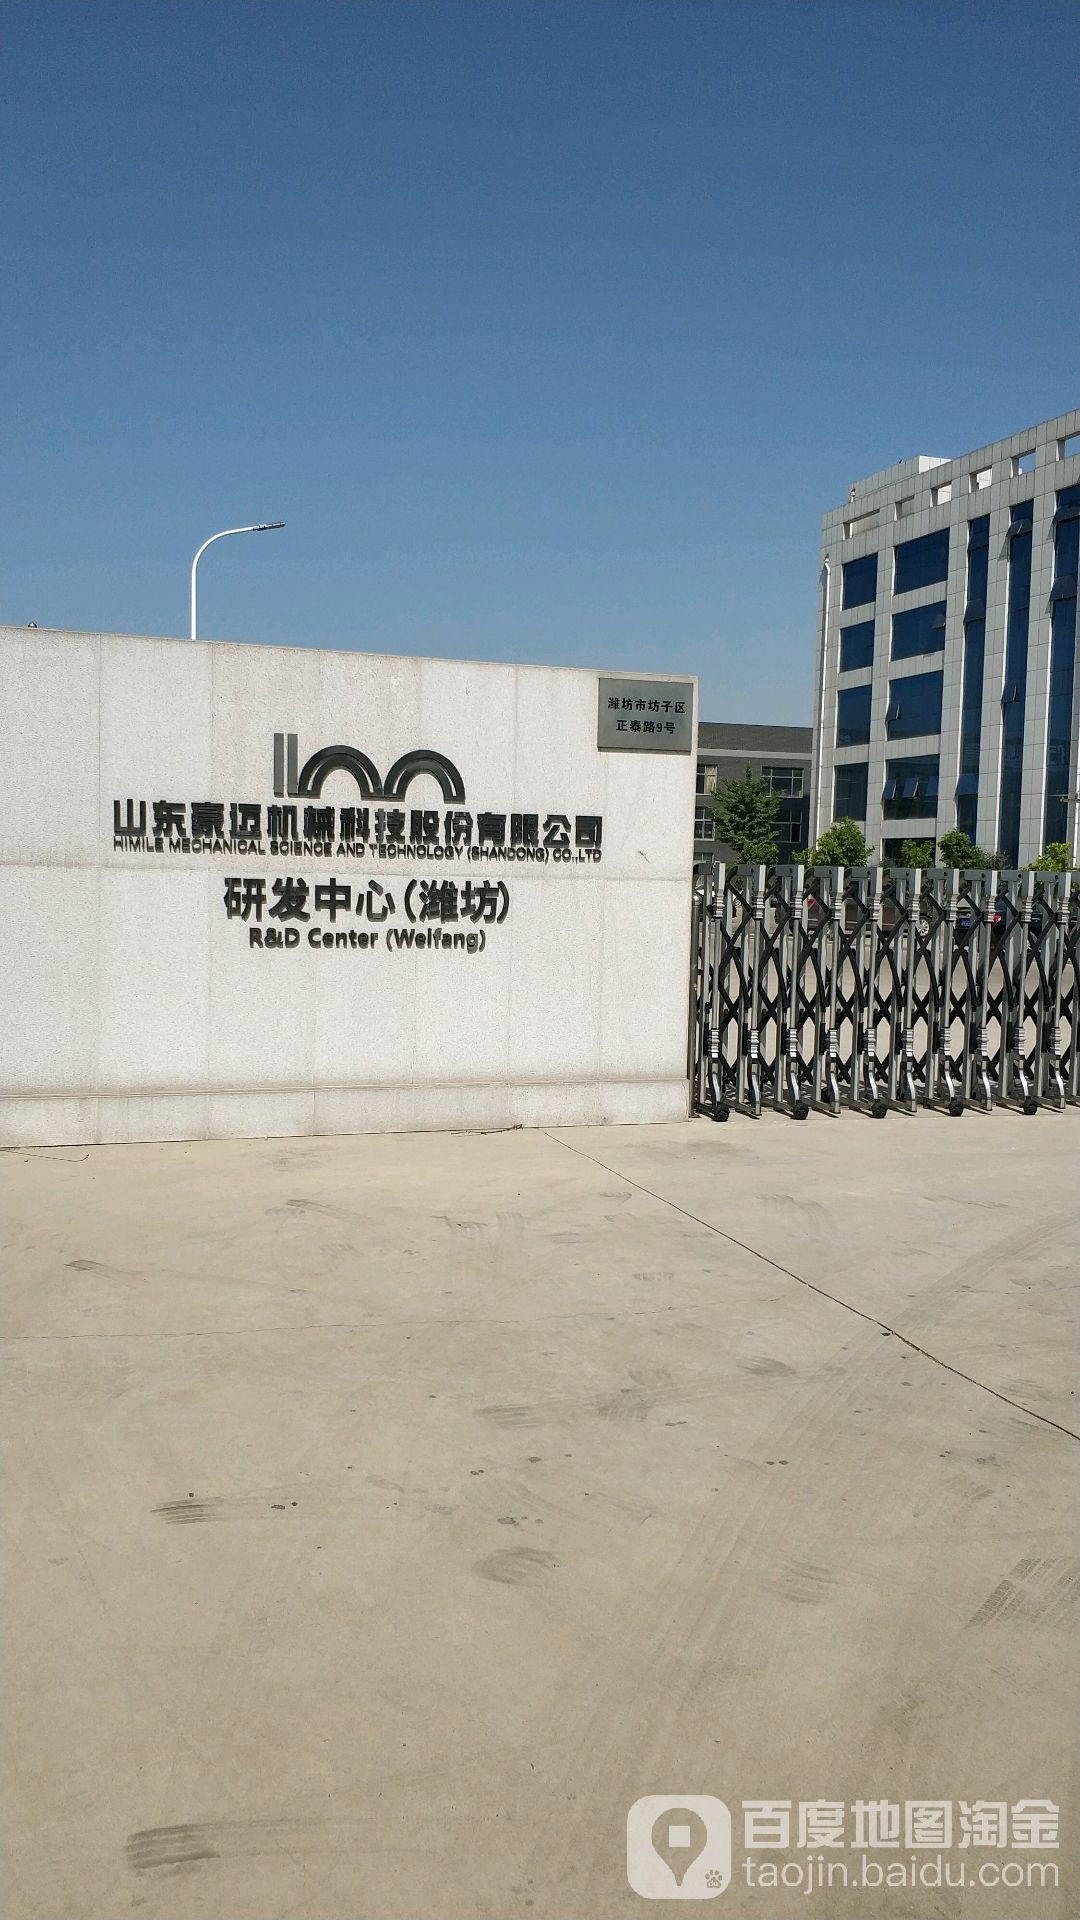 山东豪迈机械科技股份有限公司研友中心(潍坊)